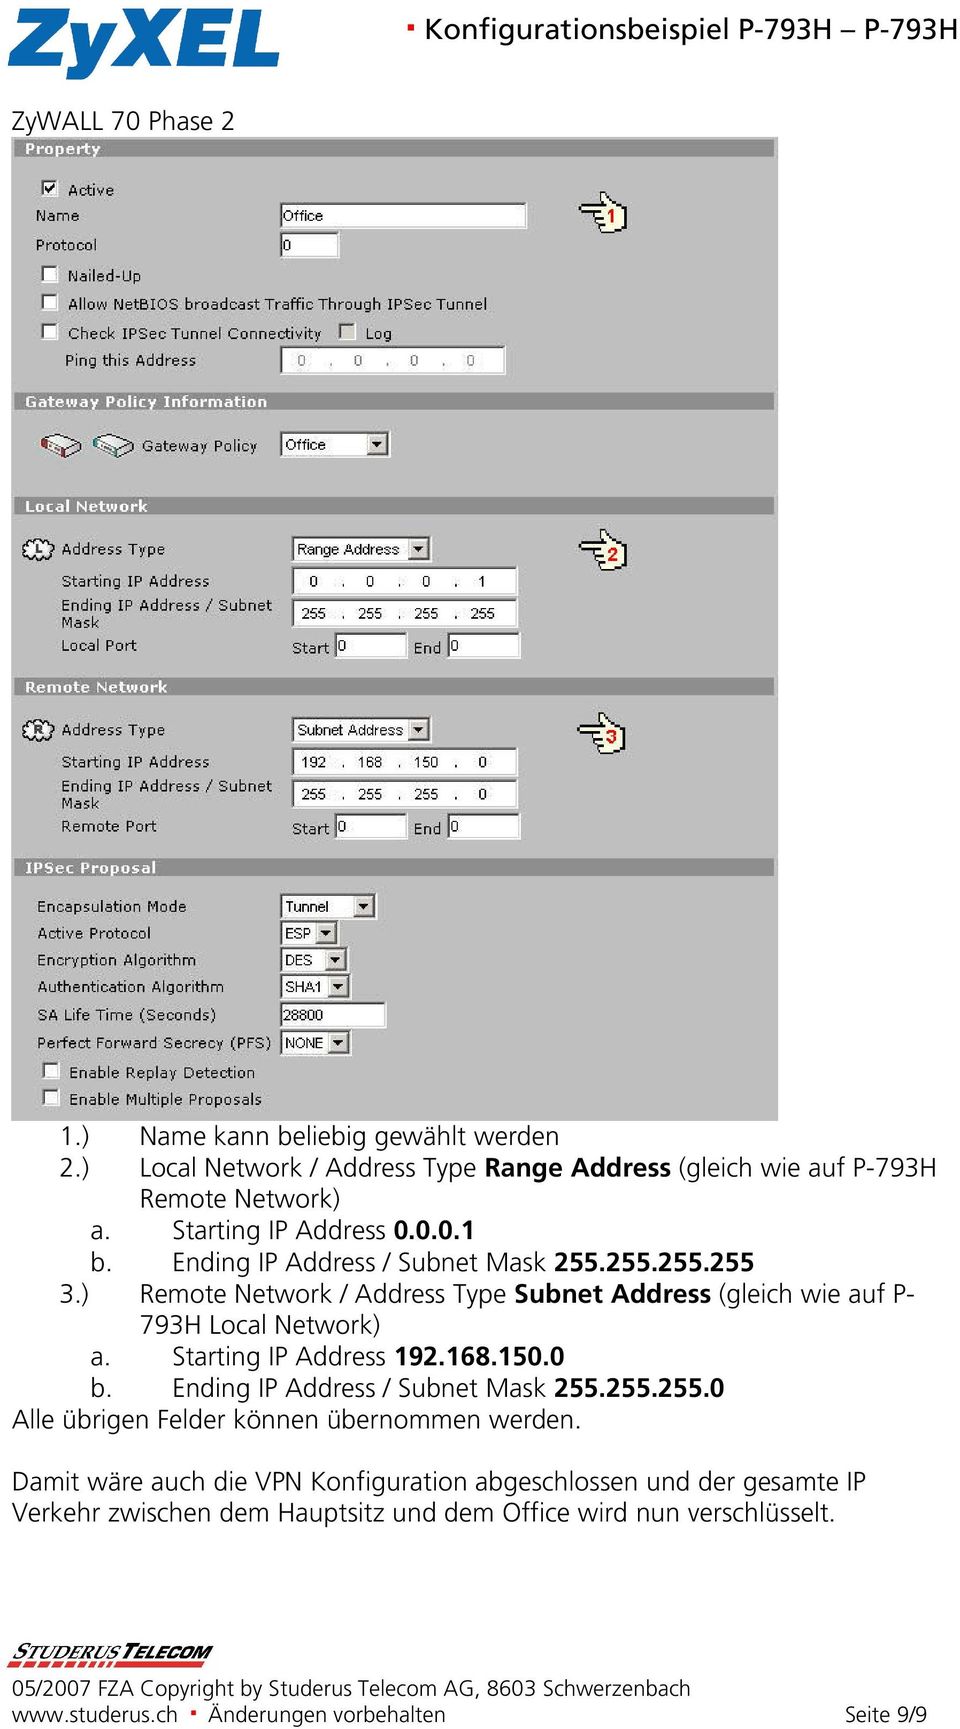 ) Remote Network / Address Type Subnet Address (gleich wie auf P- 793H Local Network) a. Starting IP Address 192.168.150.0 b.